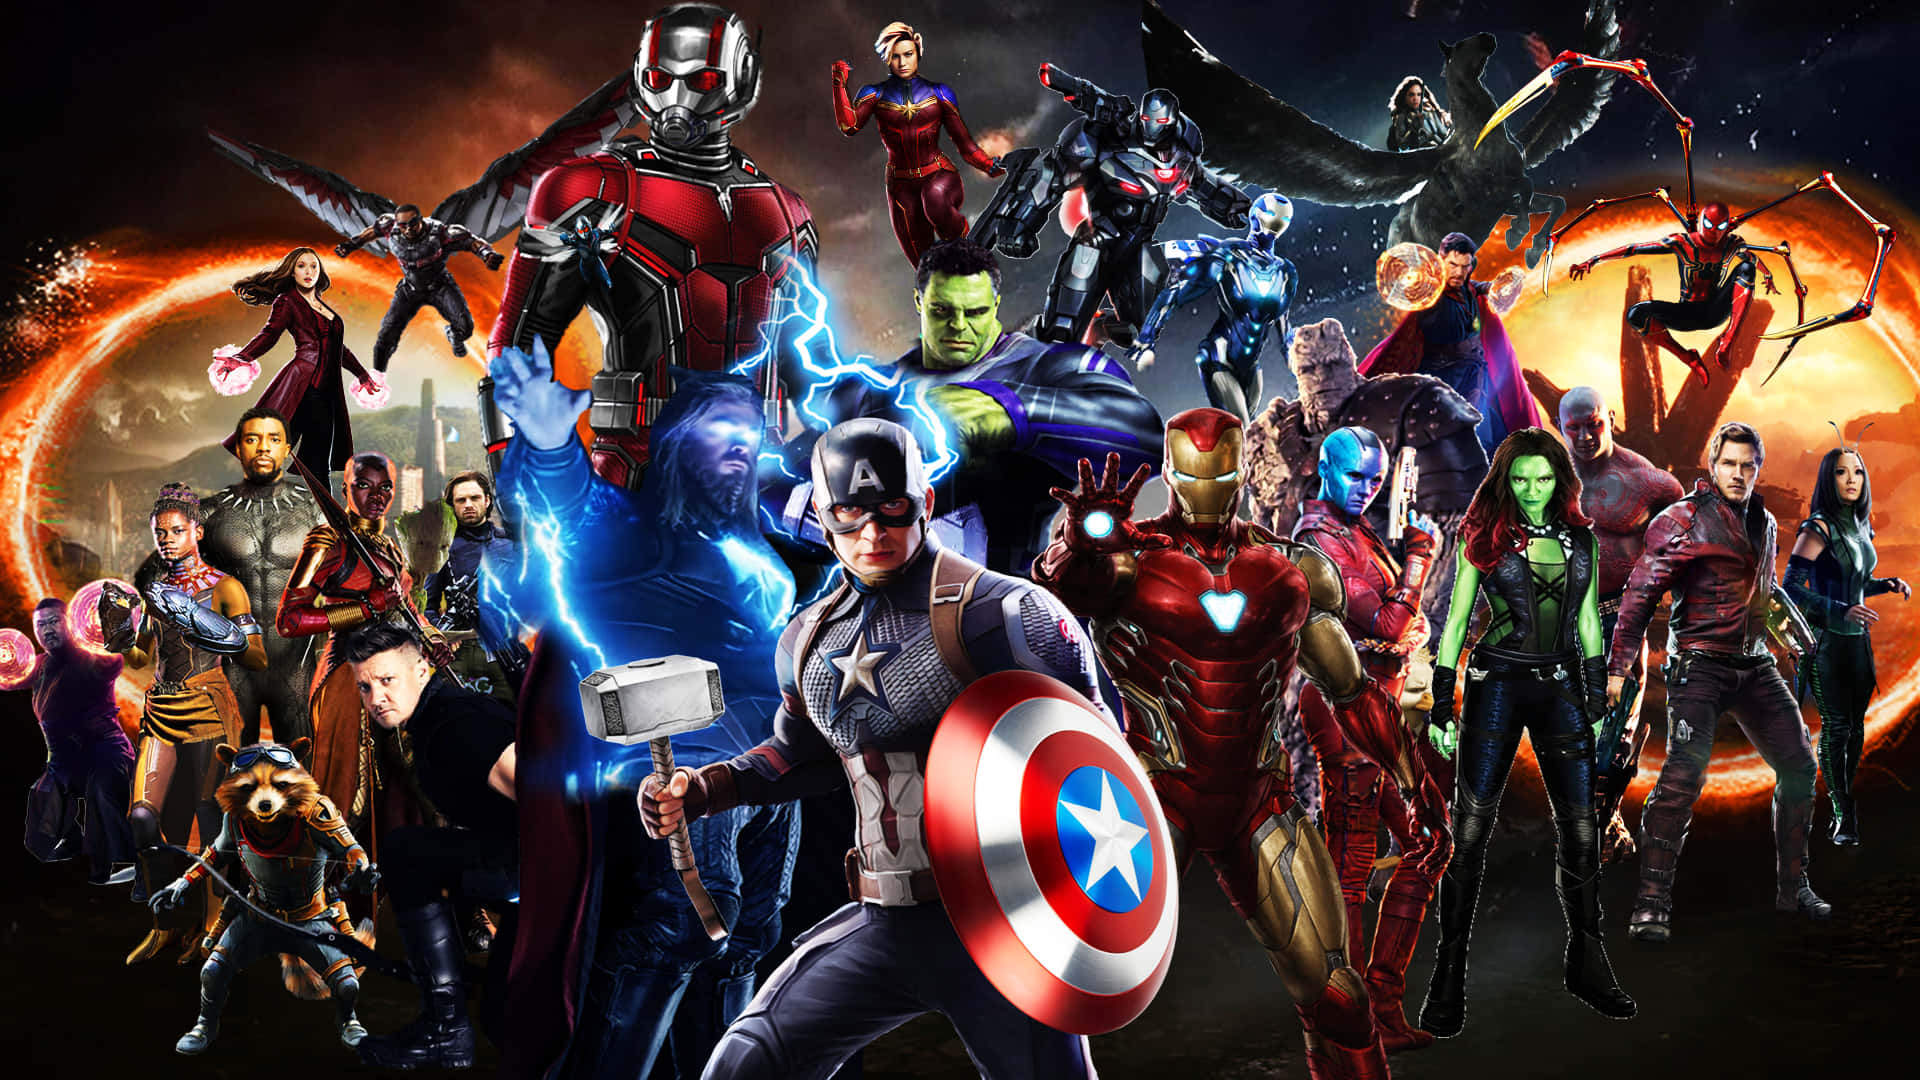 Avengersvereint - Das Team, Das Die Welt Gerettet Hat